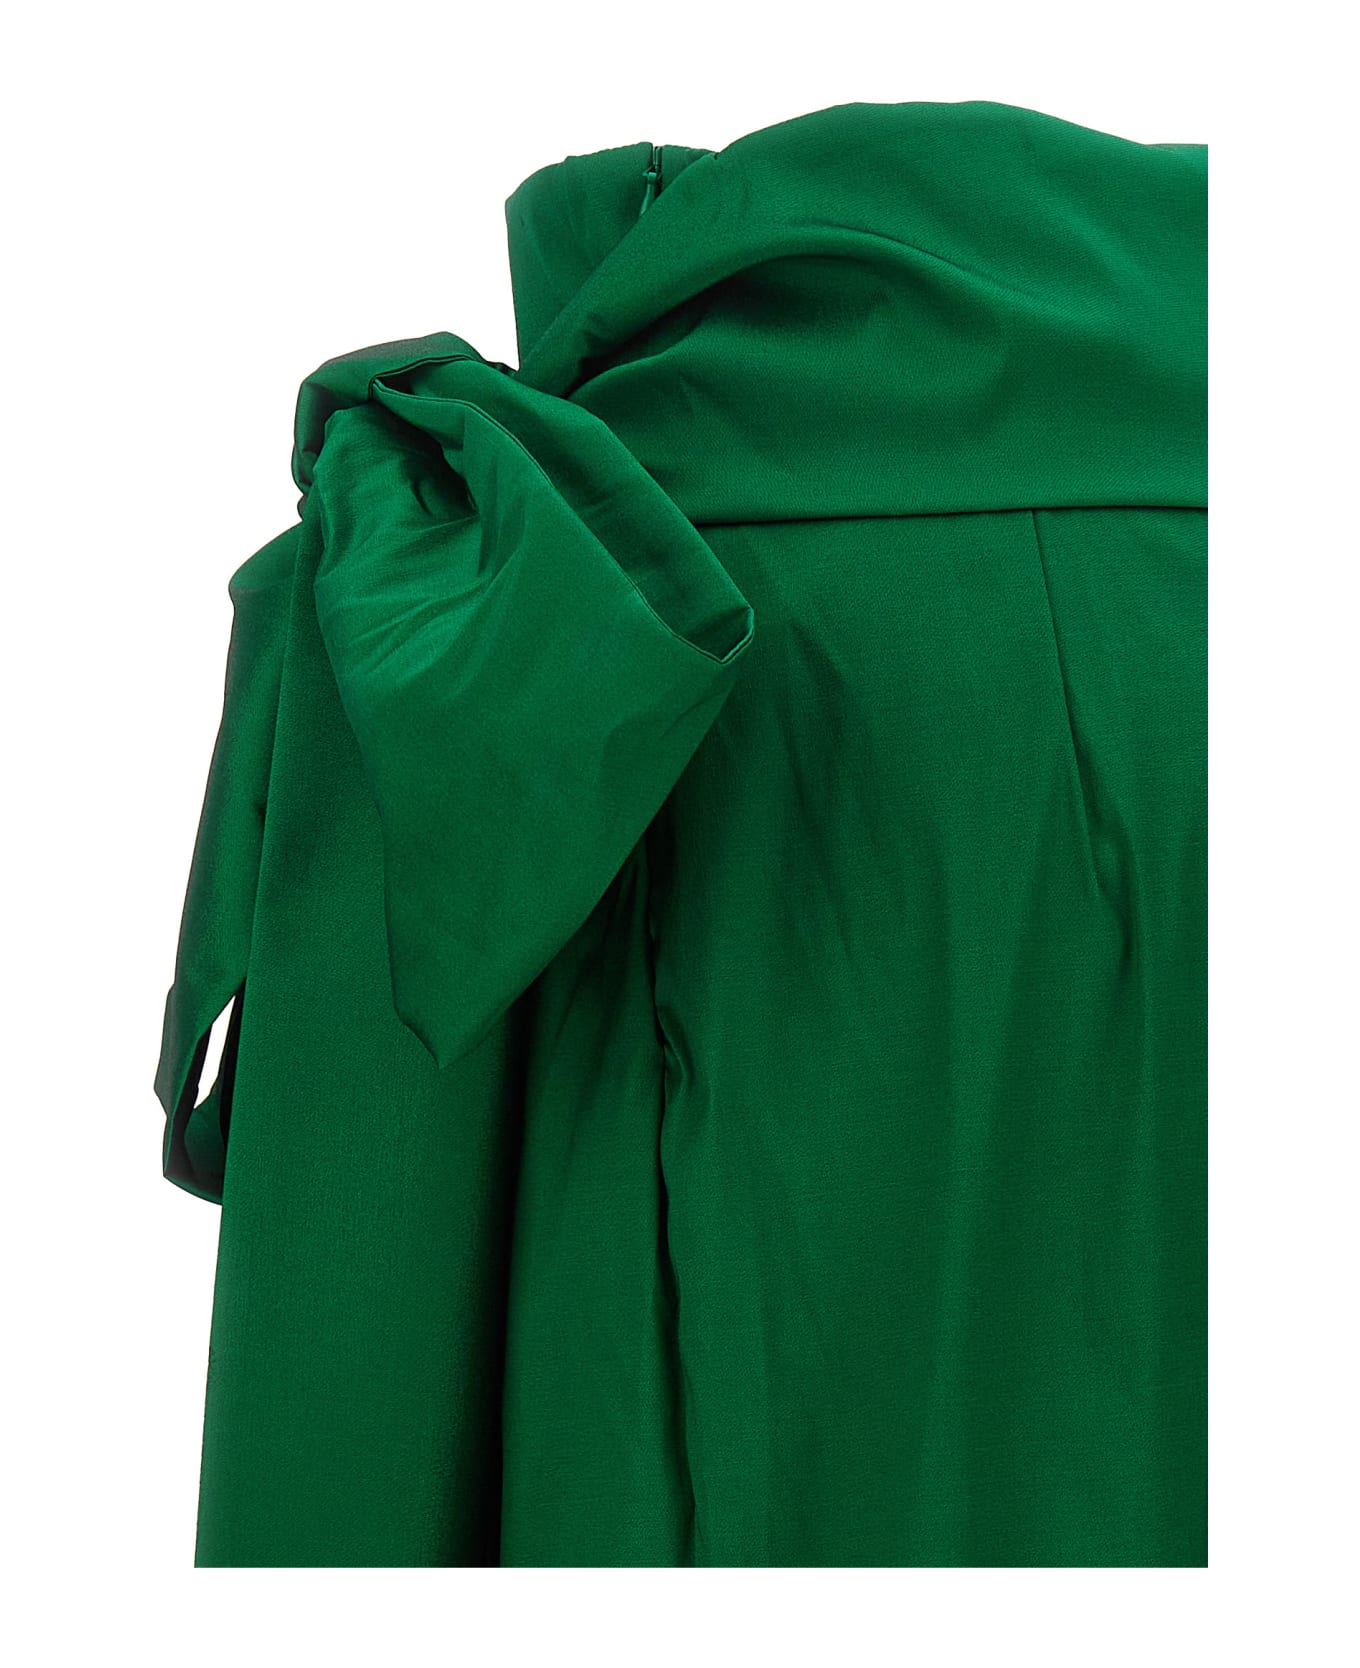 Bernadette 'bernard' Skirt - Green